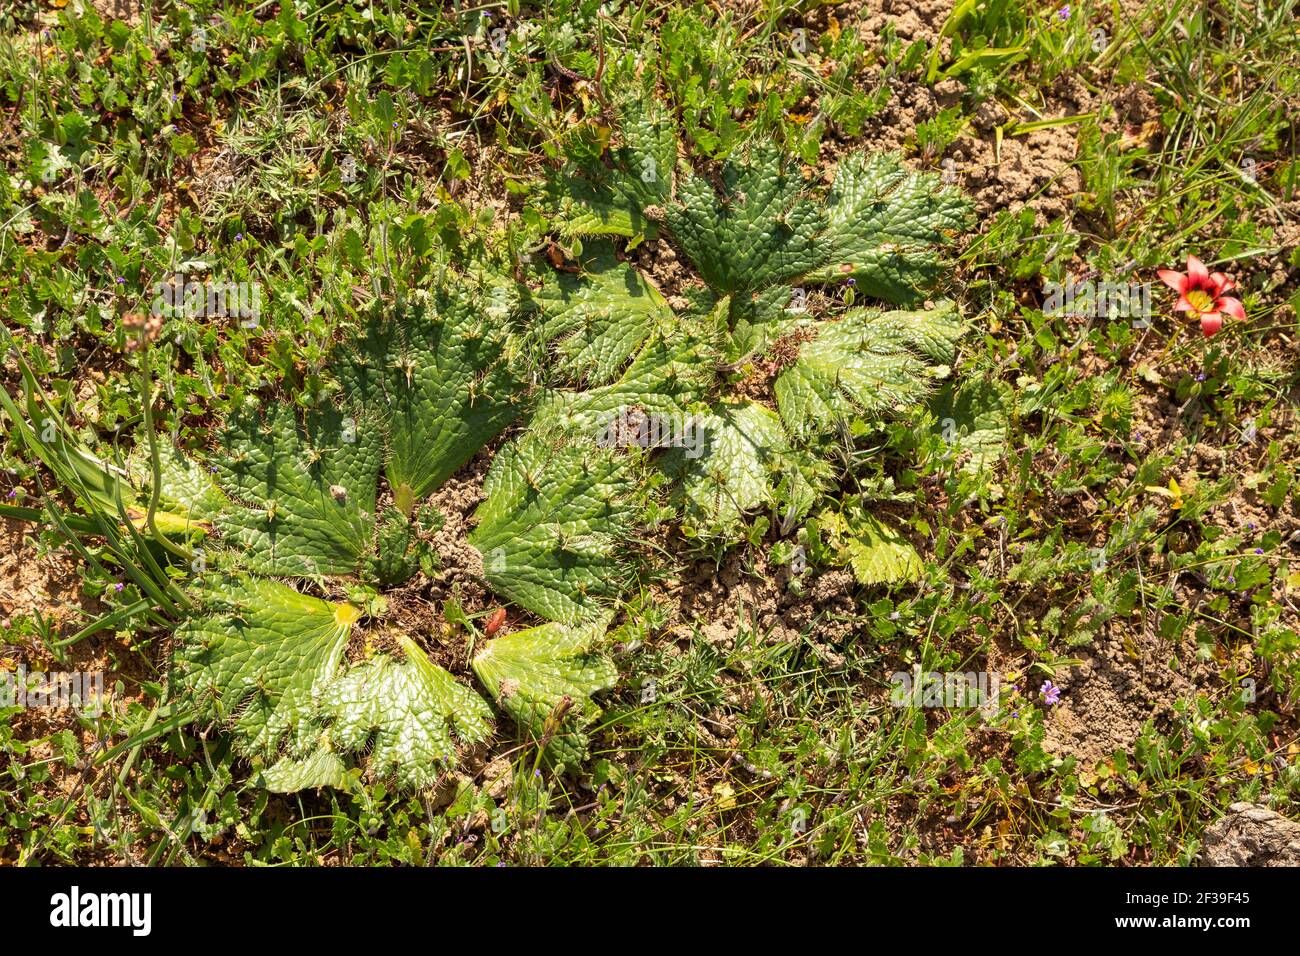 South African Wildflower: Le foglie piatte dell'endemico Arctopus sp. Visto in habiat naturale vicino a Darling nel capo occidentale del Sud Africa Foto Stock